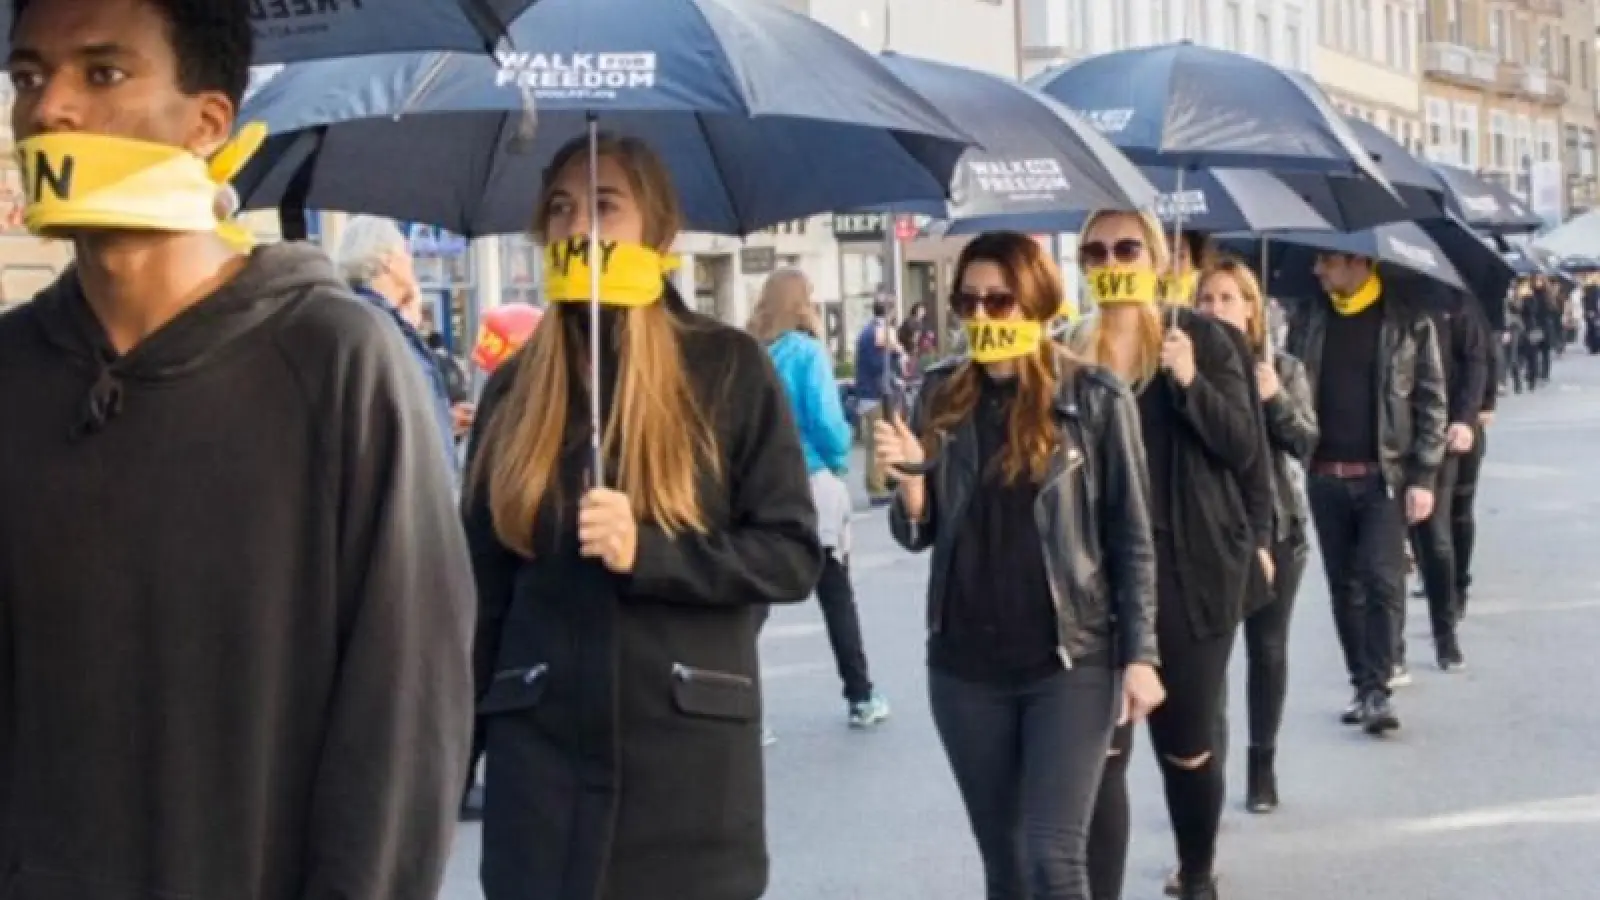 Schweigedemonstration in Schwarz: Am Samstag beteiligt sich Bayreuth am „Walk for Freedom“, der weltweit ein Zeichen gegen Sklaverei setzen möchte. (Foto: red)